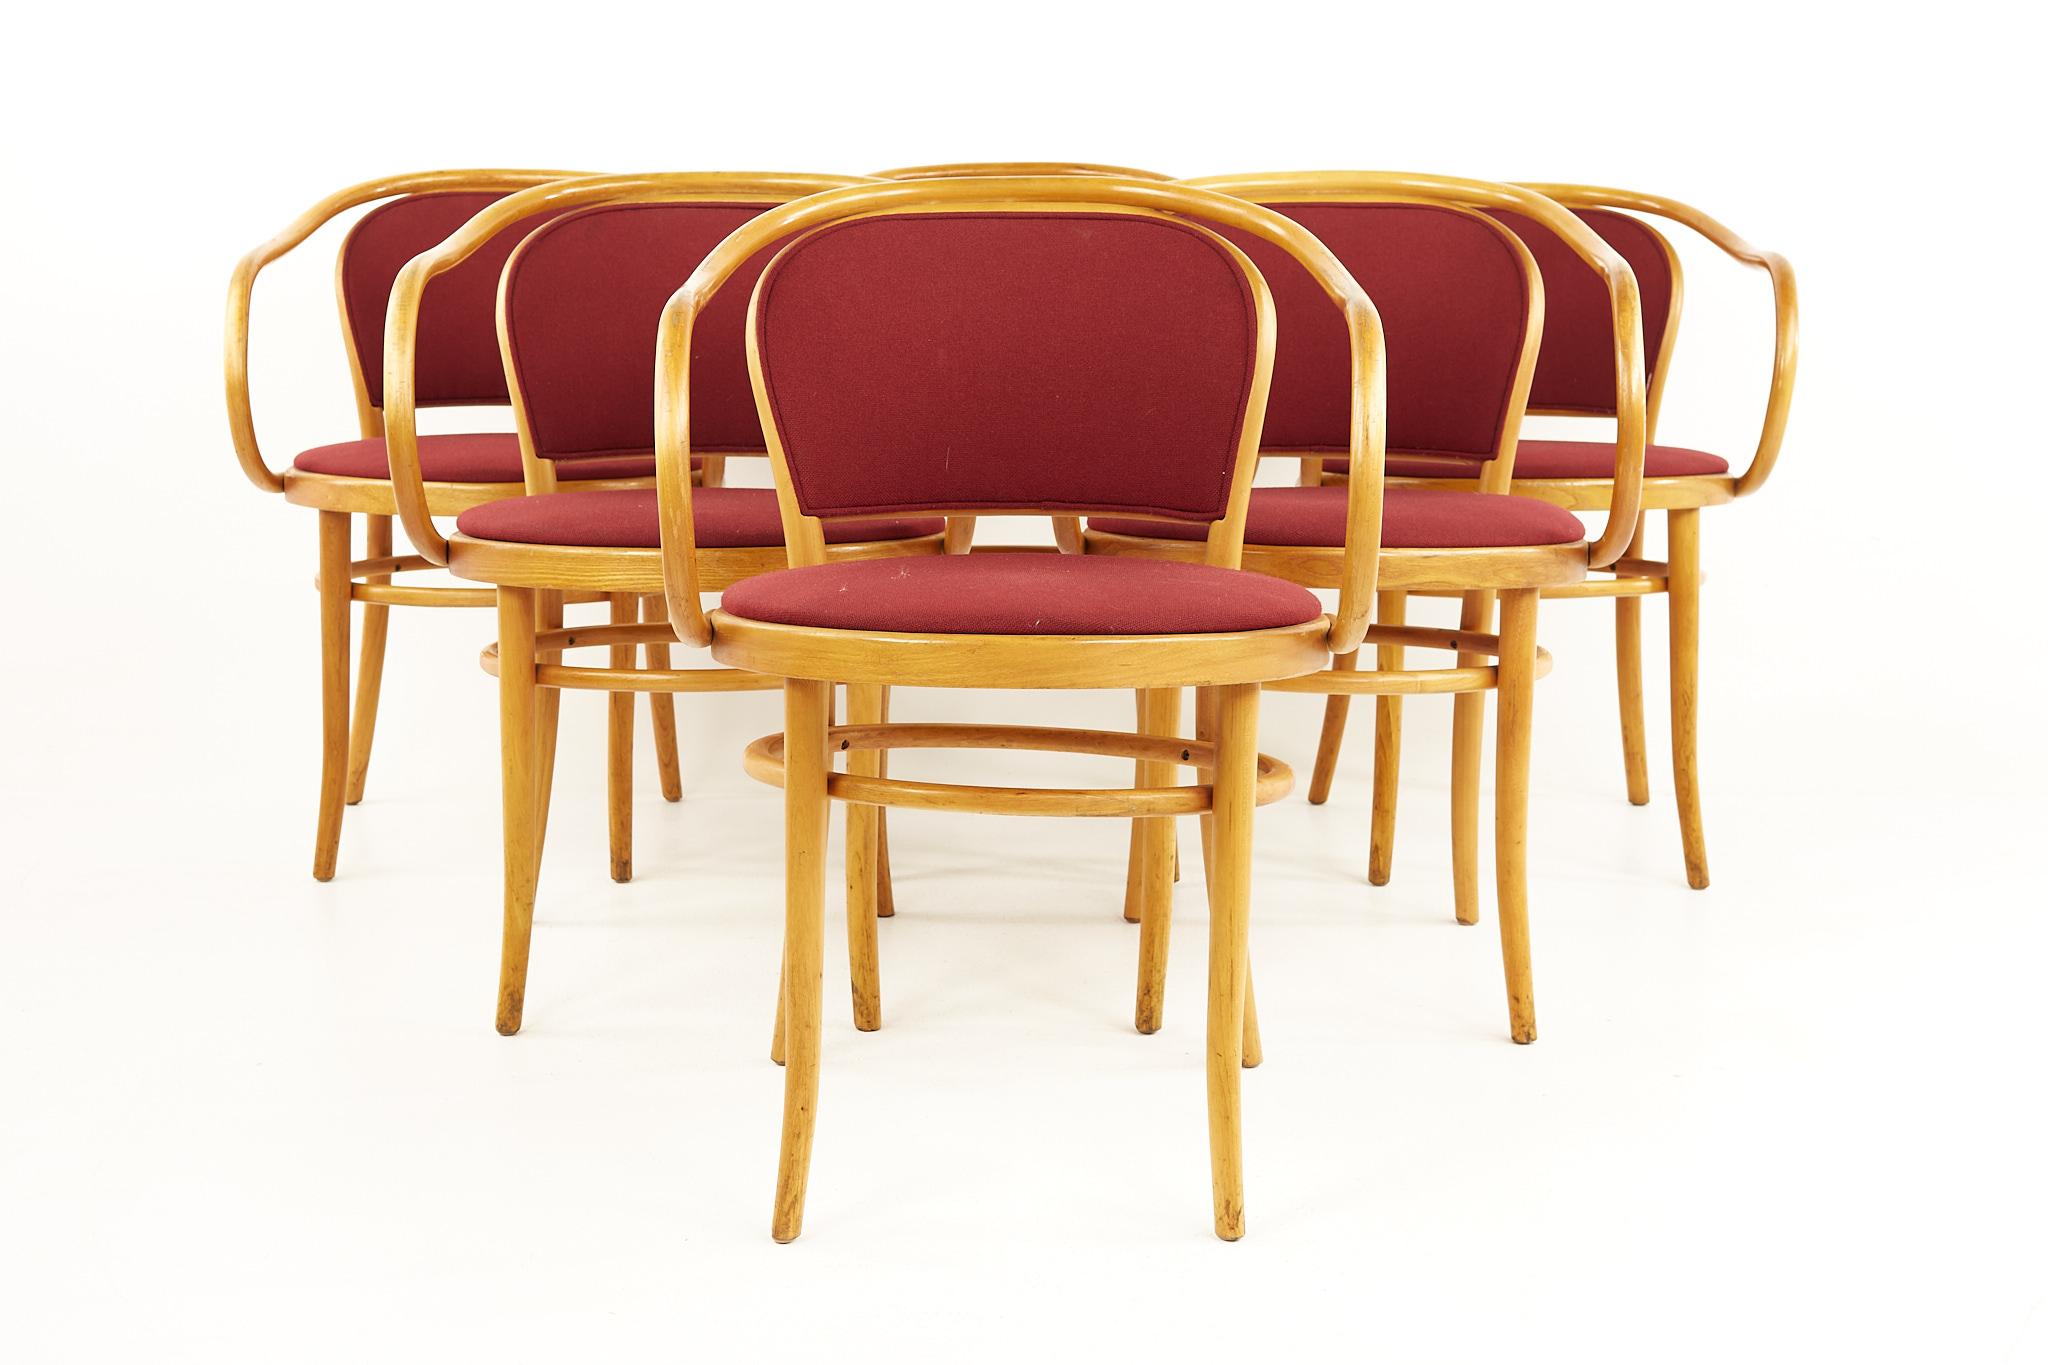 Le Corbusier für Thonet Esszimmerstühle aus Bugholz aus der Mitte des Jahrhunderts - 6er Set

Jeder Stuhl misst: 21 breit x 22 tief x 31 hoch, mit einer Sitzhöhe von 19 Zoll und einer Armhöhe von 27,5 Zoll 

Alle Möbelstücke sind in einem so